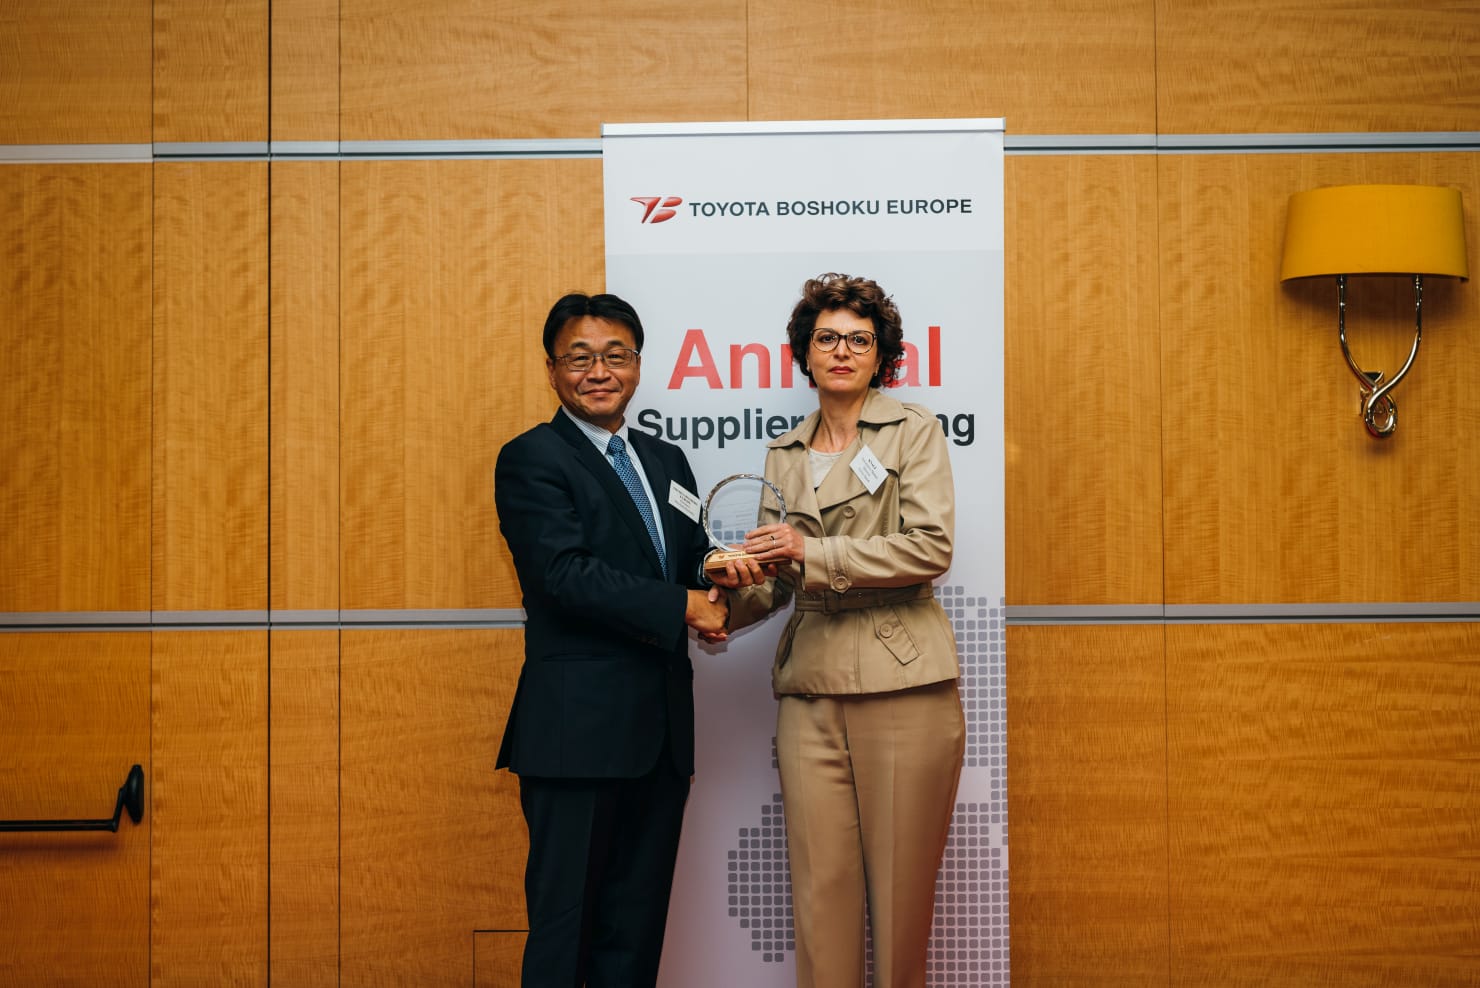 Die Verleihungszeremonie für die besten europäischen Zulieferer für Toyota Boshoku in Zaventem.